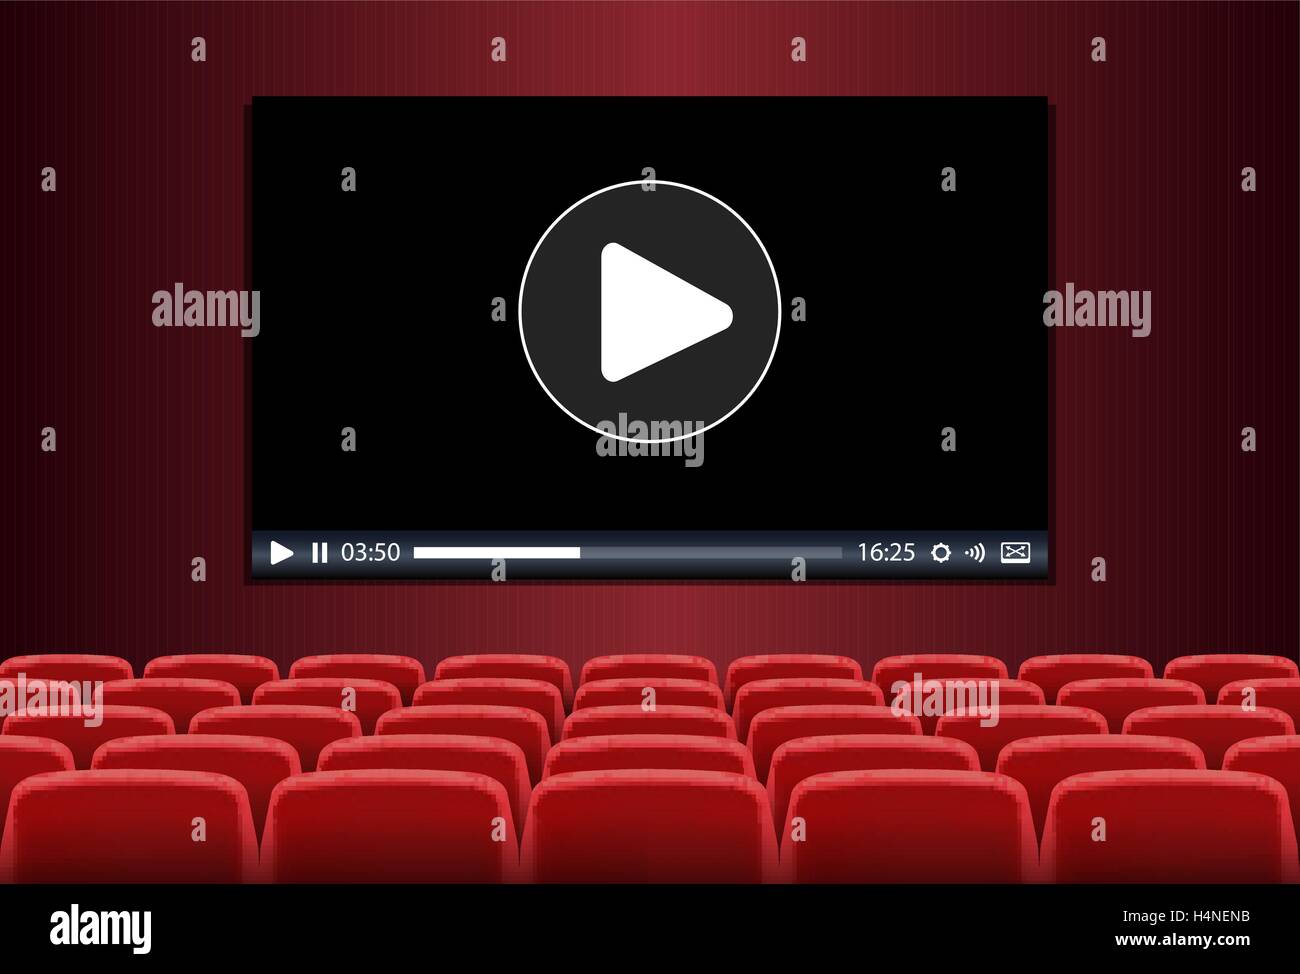 Des rangées de sièges rouges en face de lecture multimédia sur un écran Illustration de Vecteur